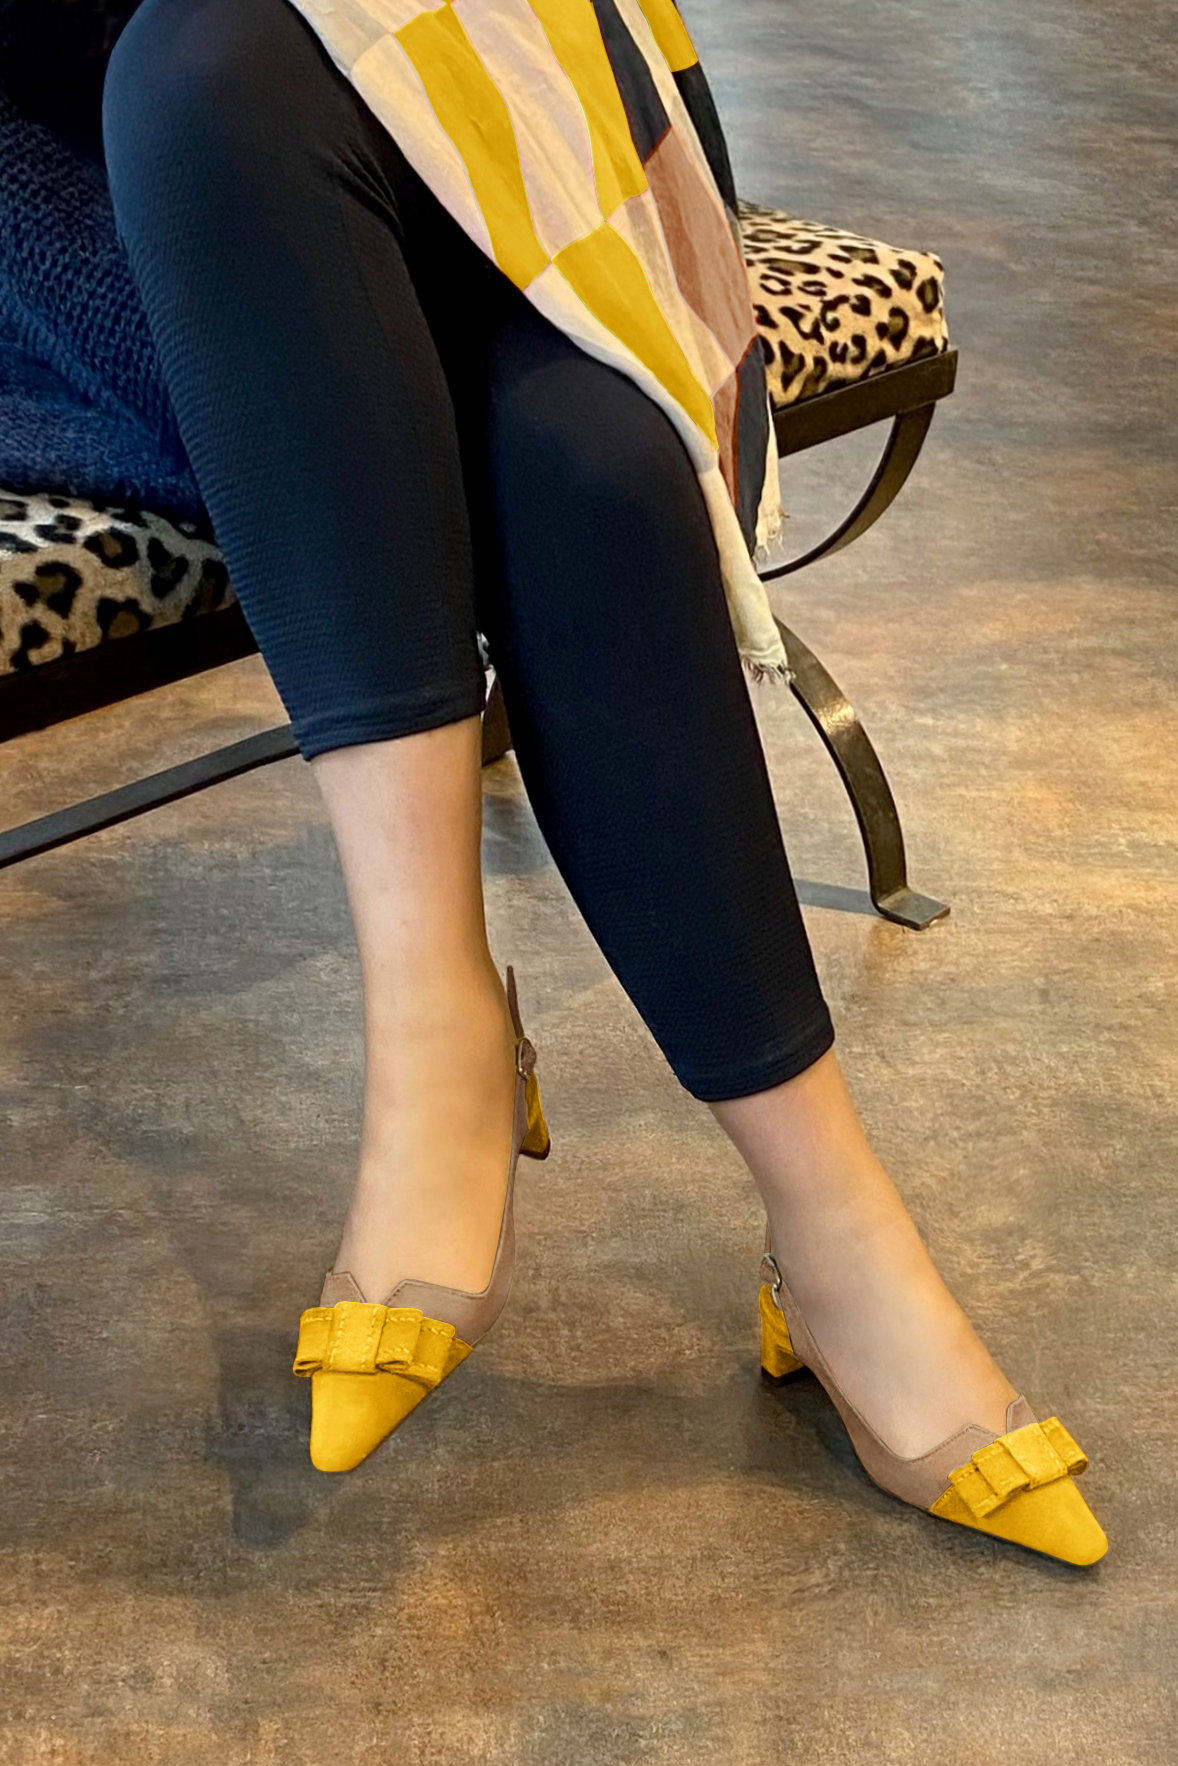 Chaussure femme à brides :  couleur jaune soleil et beige sahara. Bout effilé. Petit talon trotteur. Vue porté - Florence KOOIJMAN